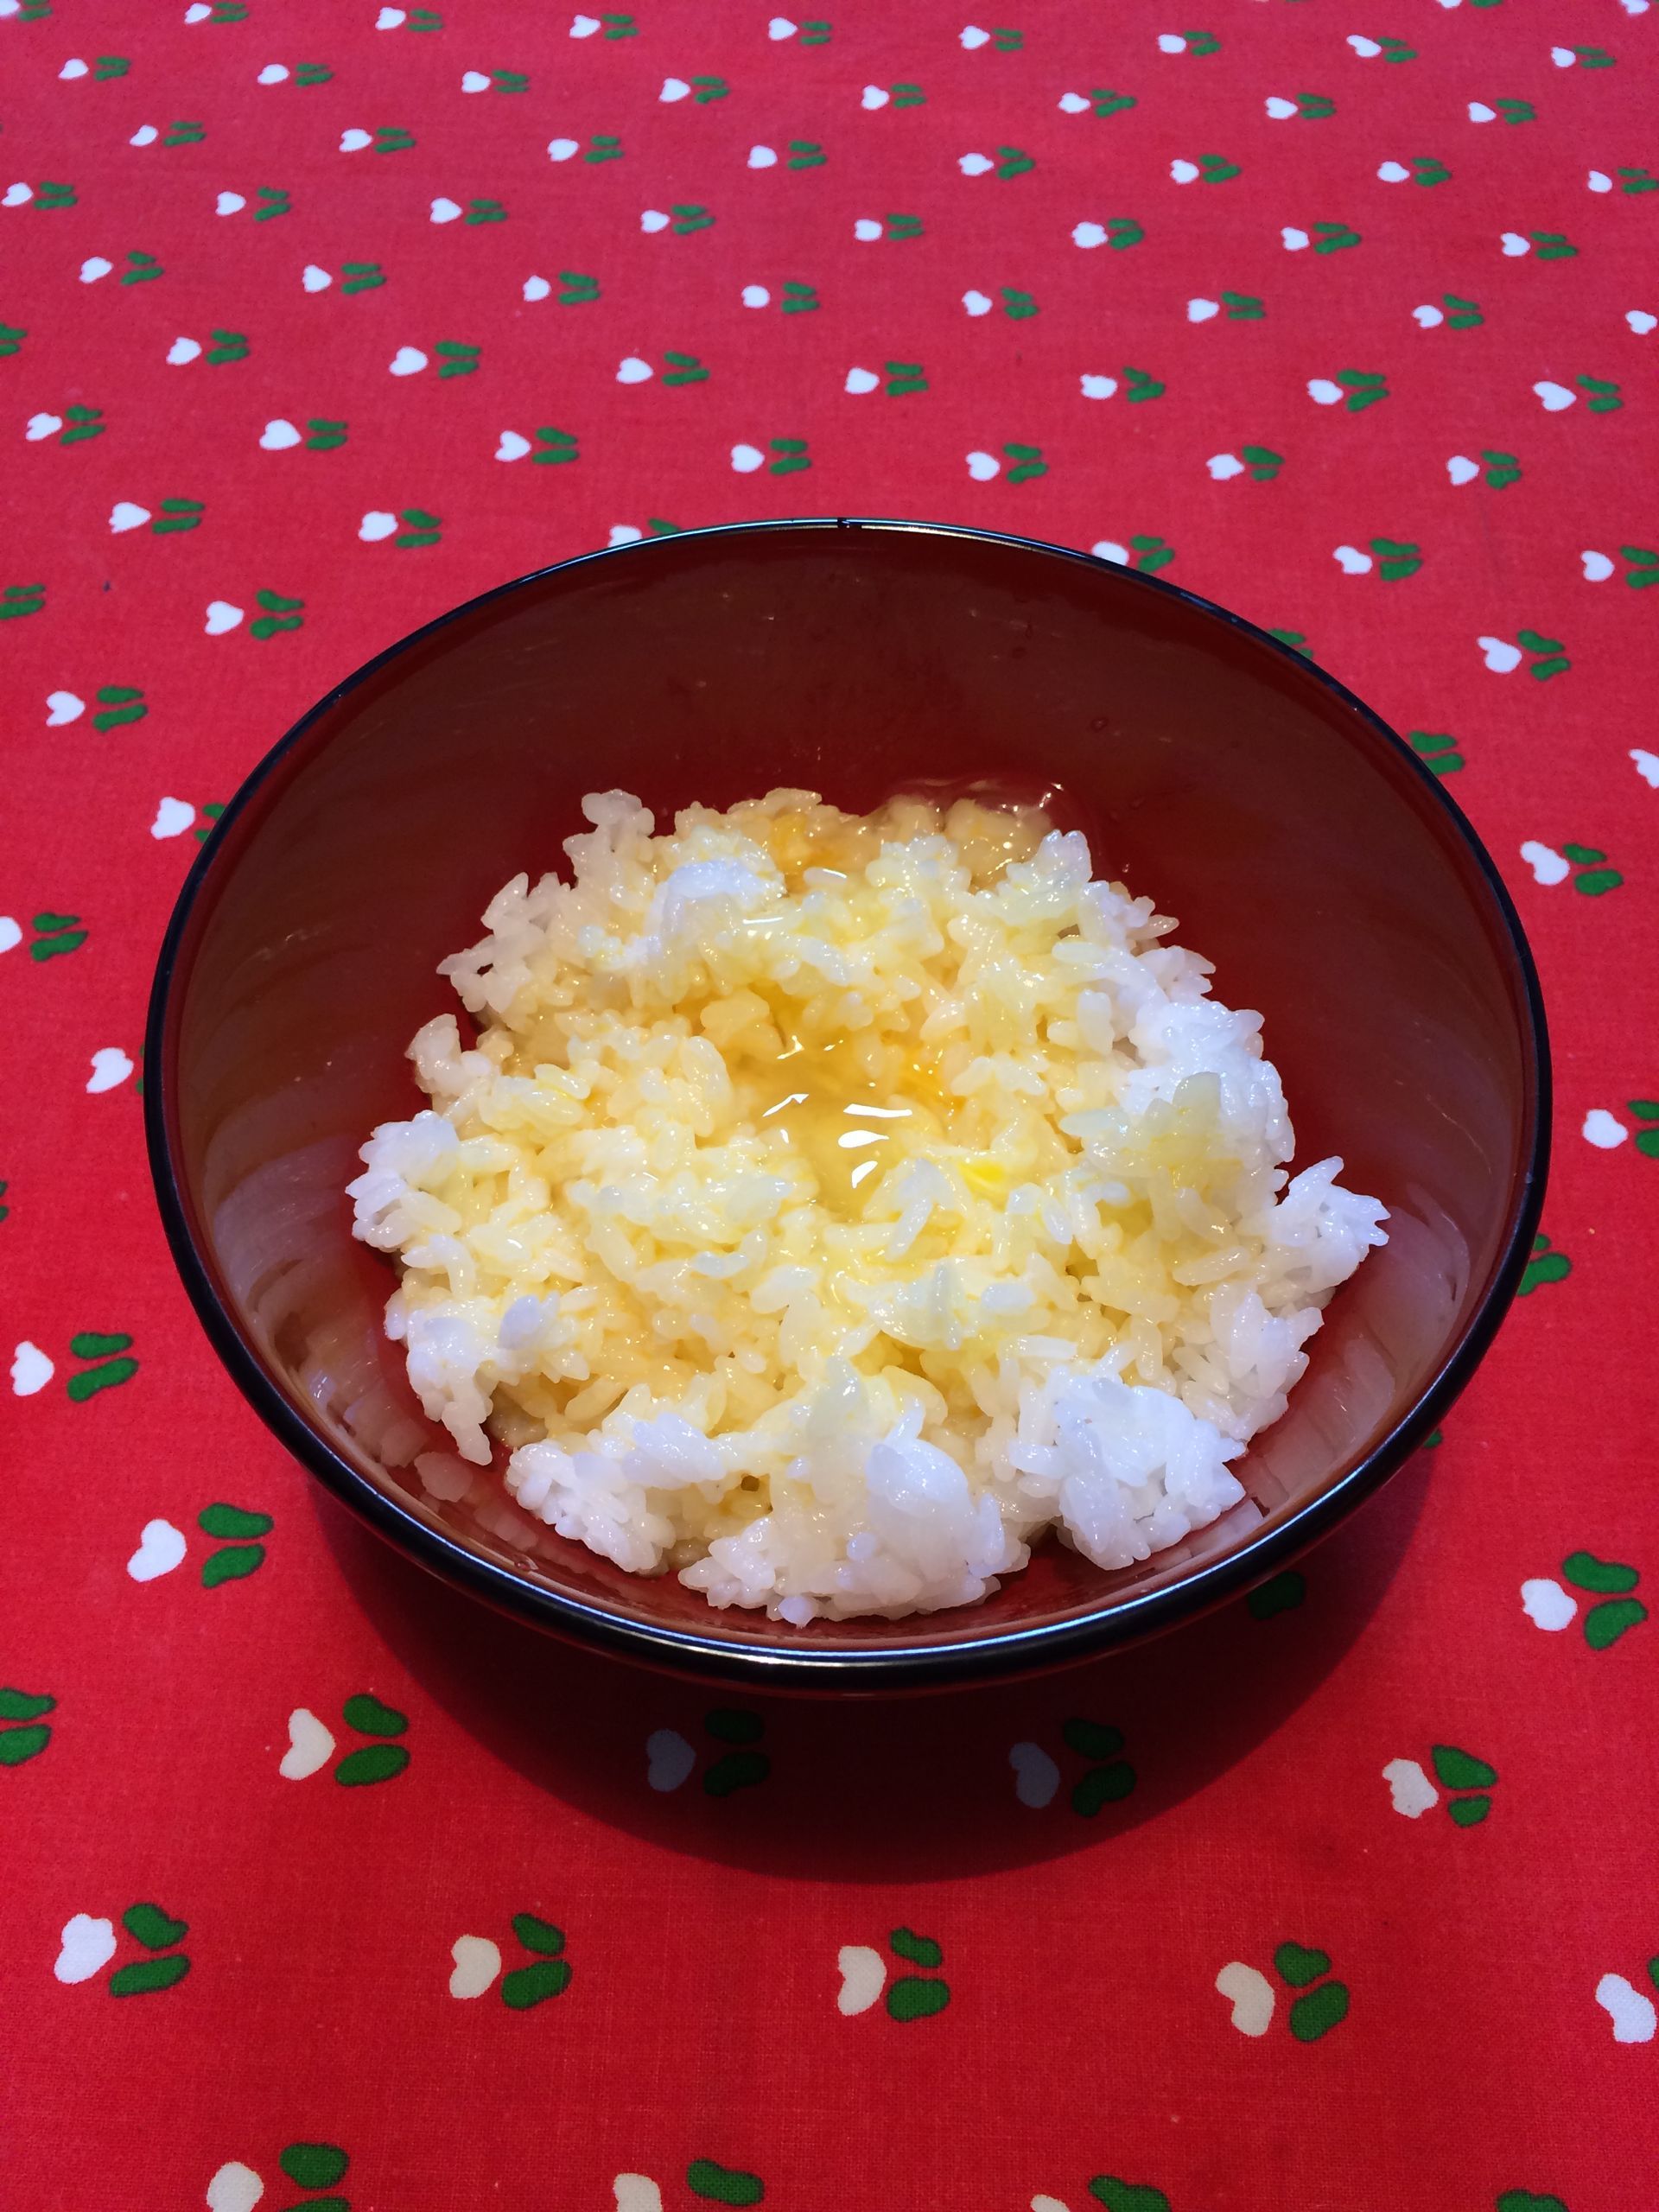 内側が赤、外側が黒の塗丼に白いご飯が盛られ、その上へよくかき混ぜられた卵がかけられている。